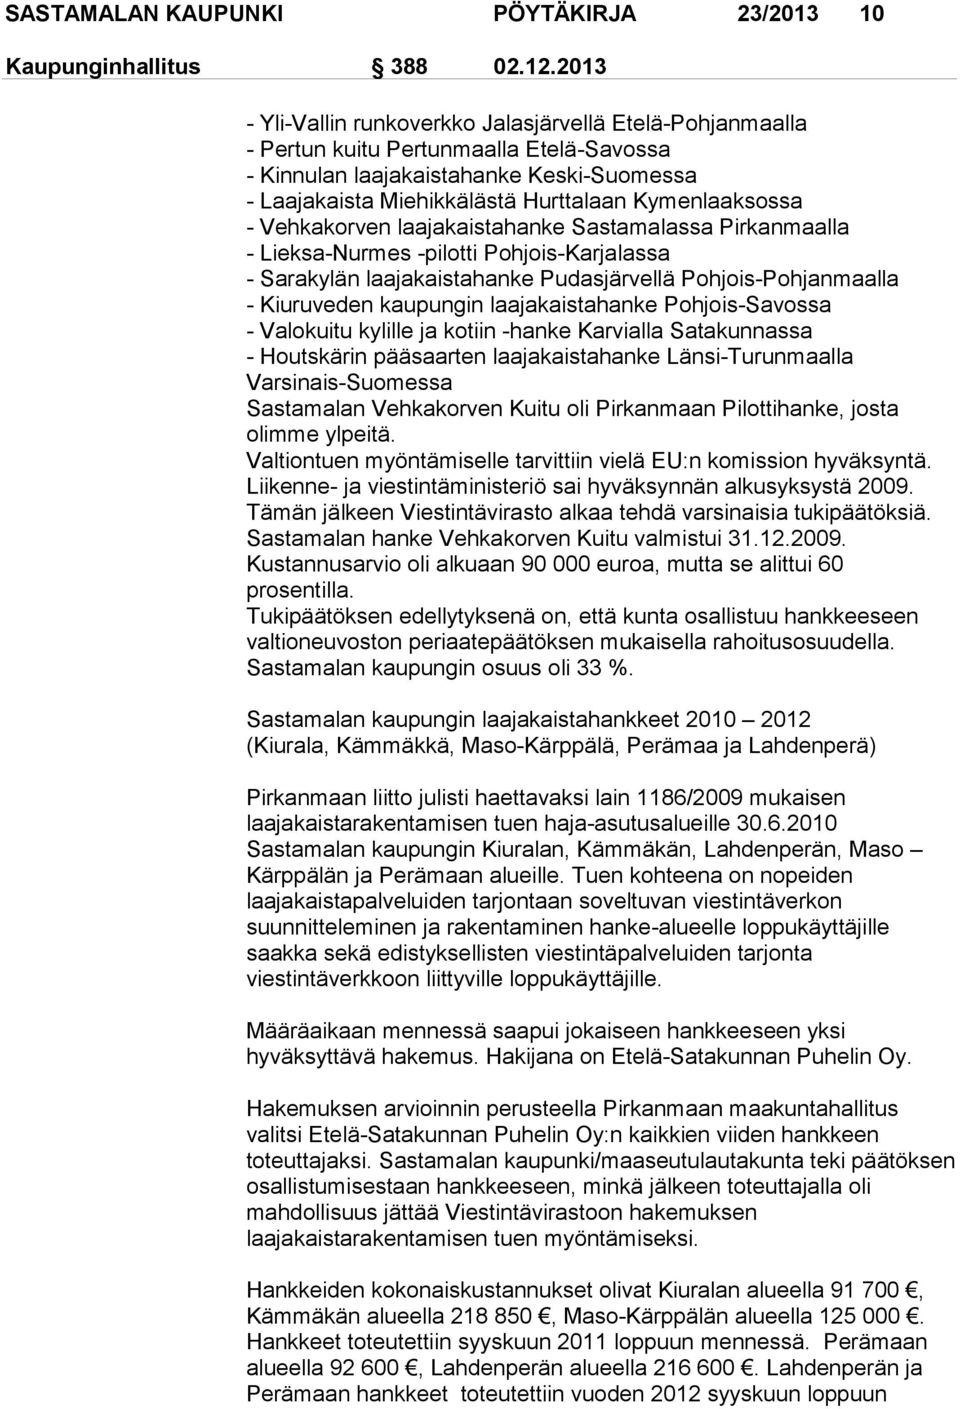 Kymenlaaksossa - Vehkakorven laajakaistahanke Sastamalassa Pirkanmaalla - Lieksa-Nurmes -pilotti Pohjois-Karjalassa - Sarakylän laajakaistahanke Pudasjärvellä Pohjois-Pohjanmaalla - Kiuruveden